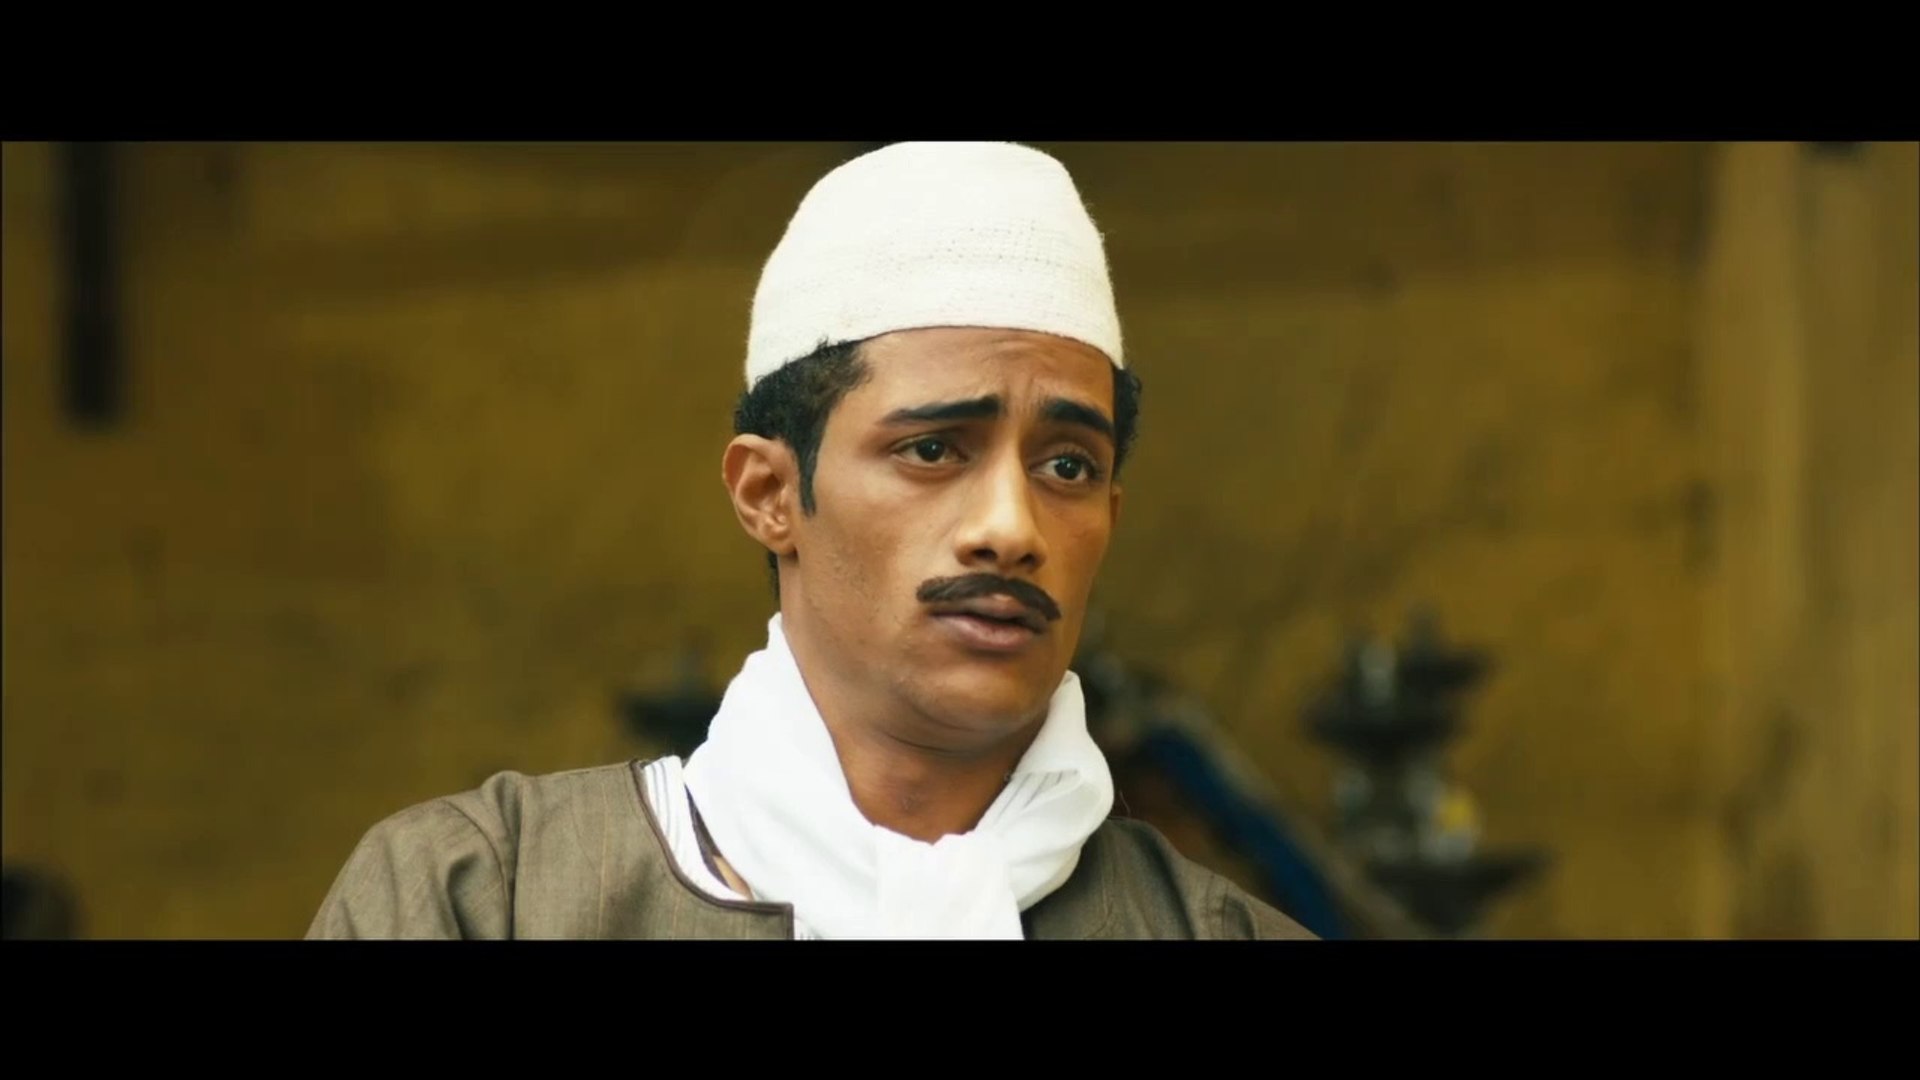 فيلم واحد صعيدي بطولة محمد رمضان كامل - فيديو Dailymotion